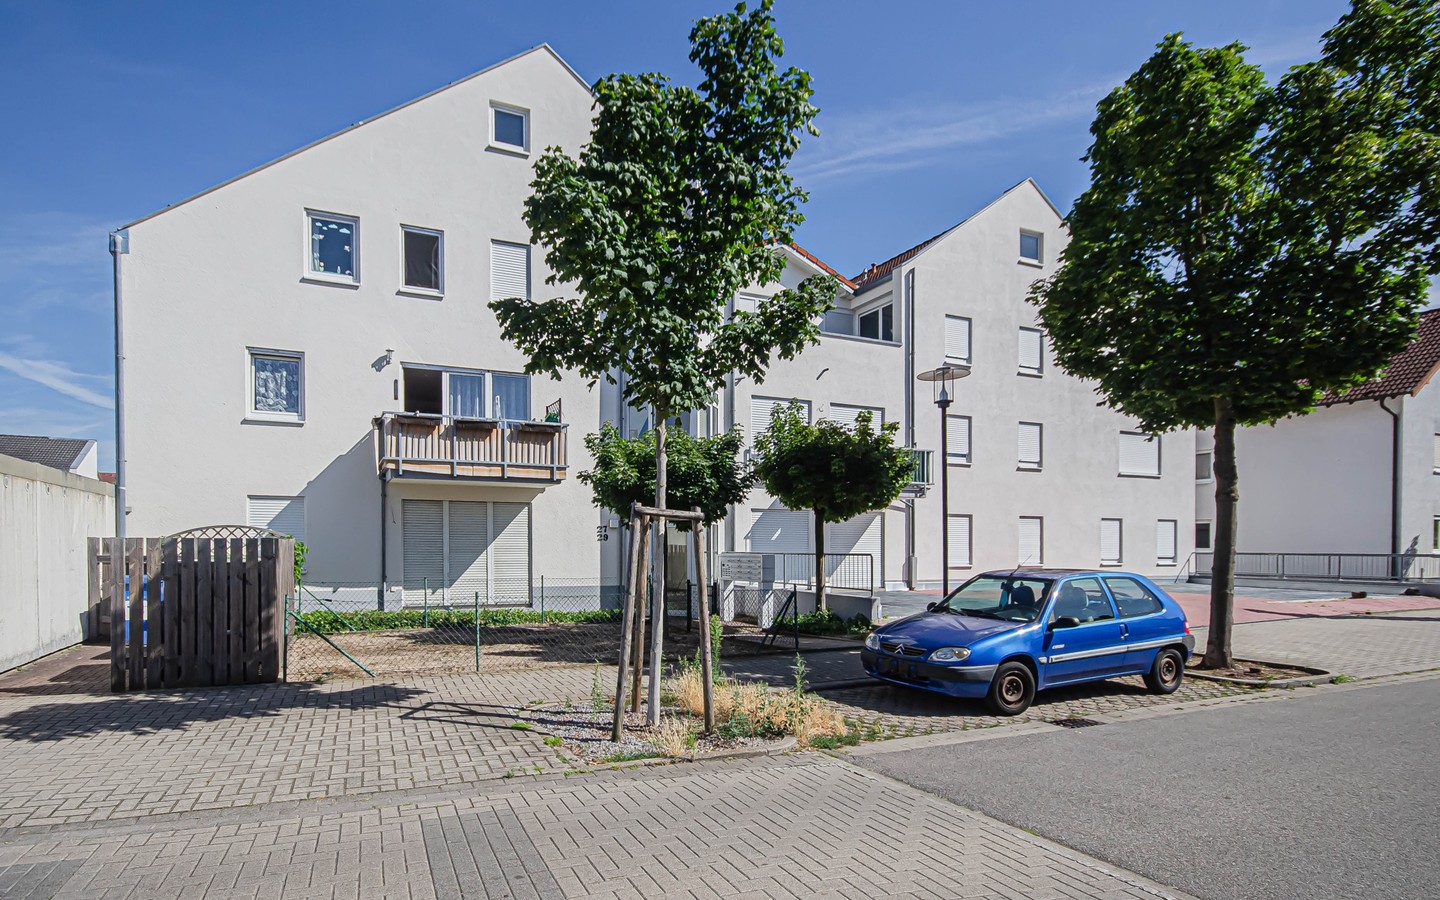 Außenansicht - Klein aber fein: Helle 2-Zimmer Wohnung in der
Schlossstadt Schwetzingen